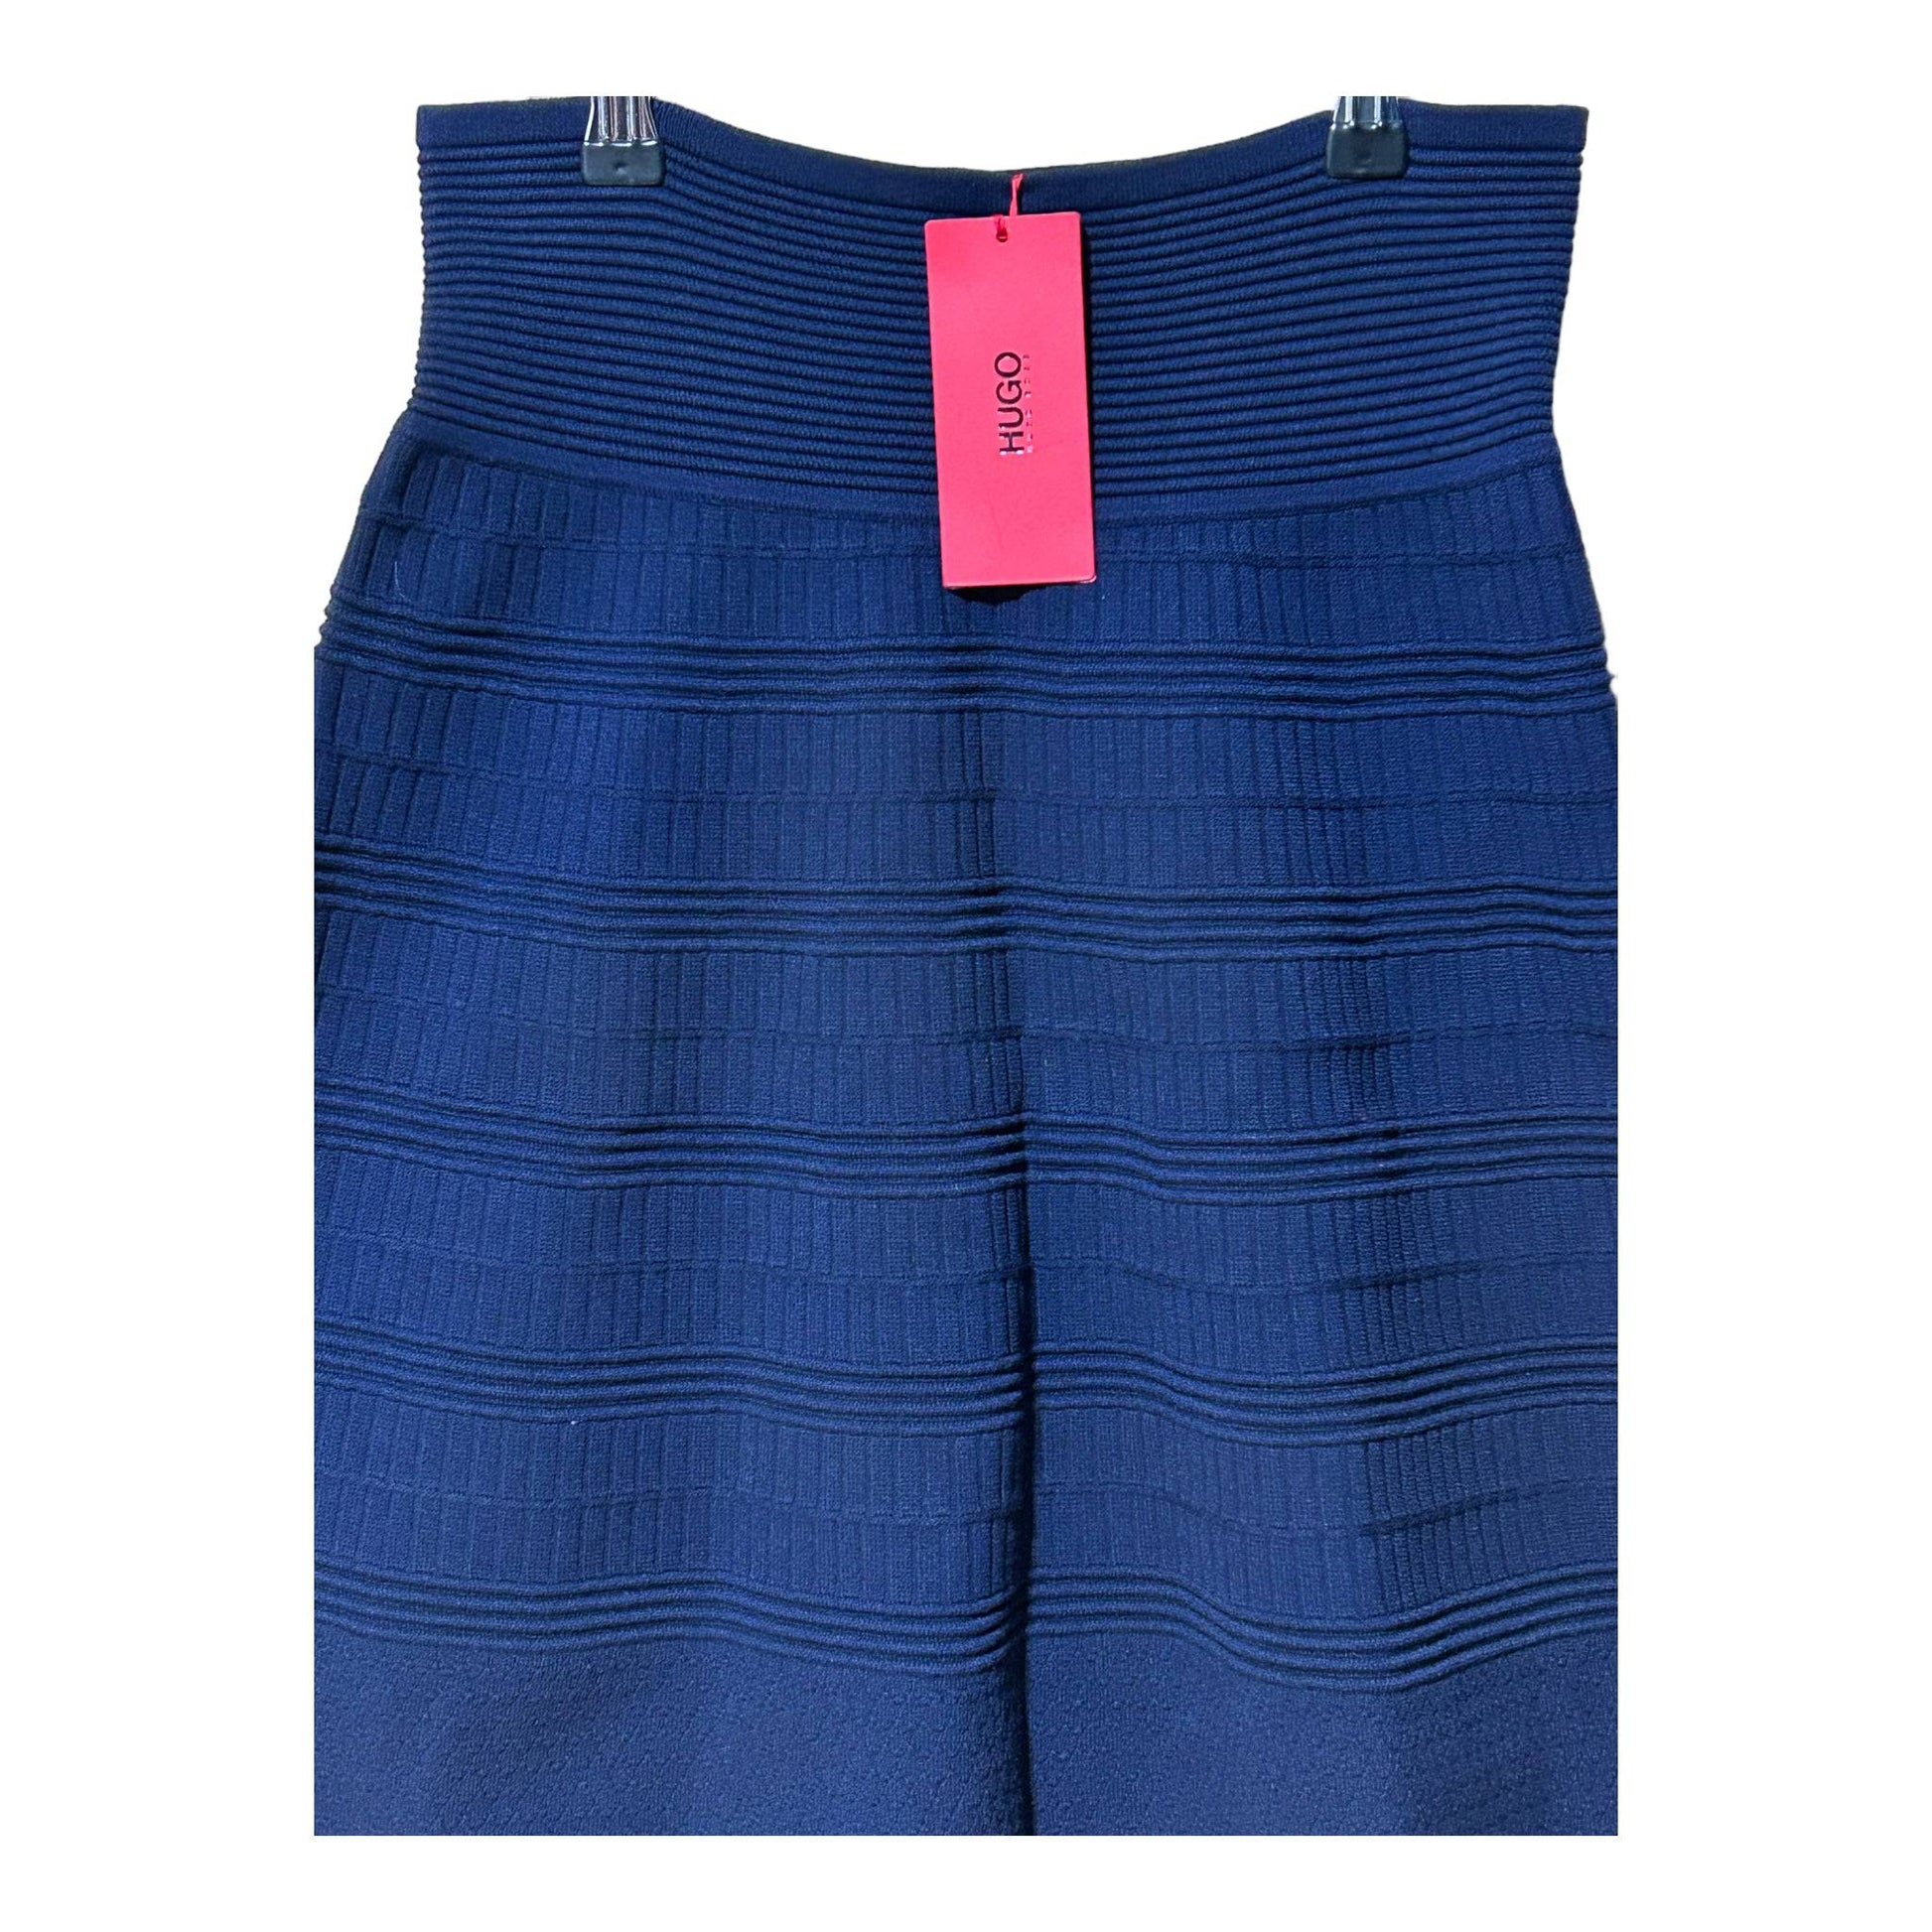 Hugo Boss Shanahan Knit Skirt - Recurring.Life